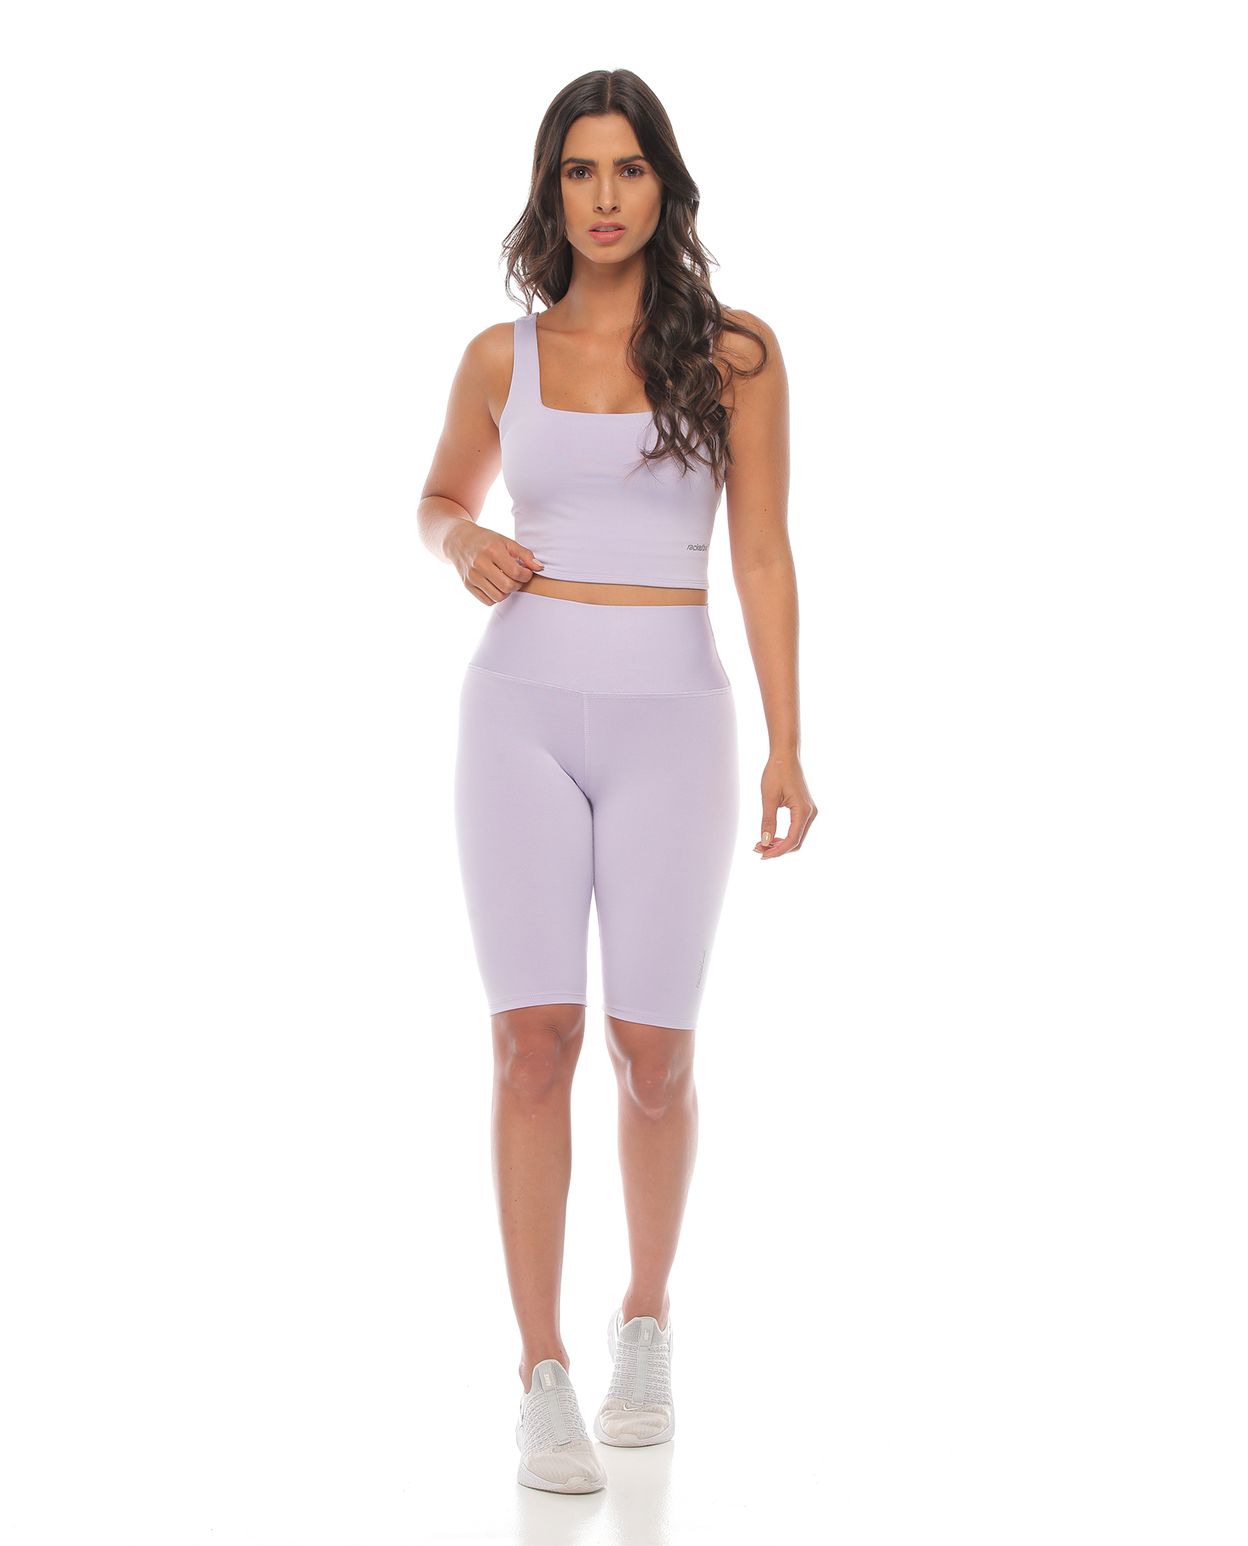 modelo con licra corta deportiva y top deportivo color lila para mujer cuerpo completo